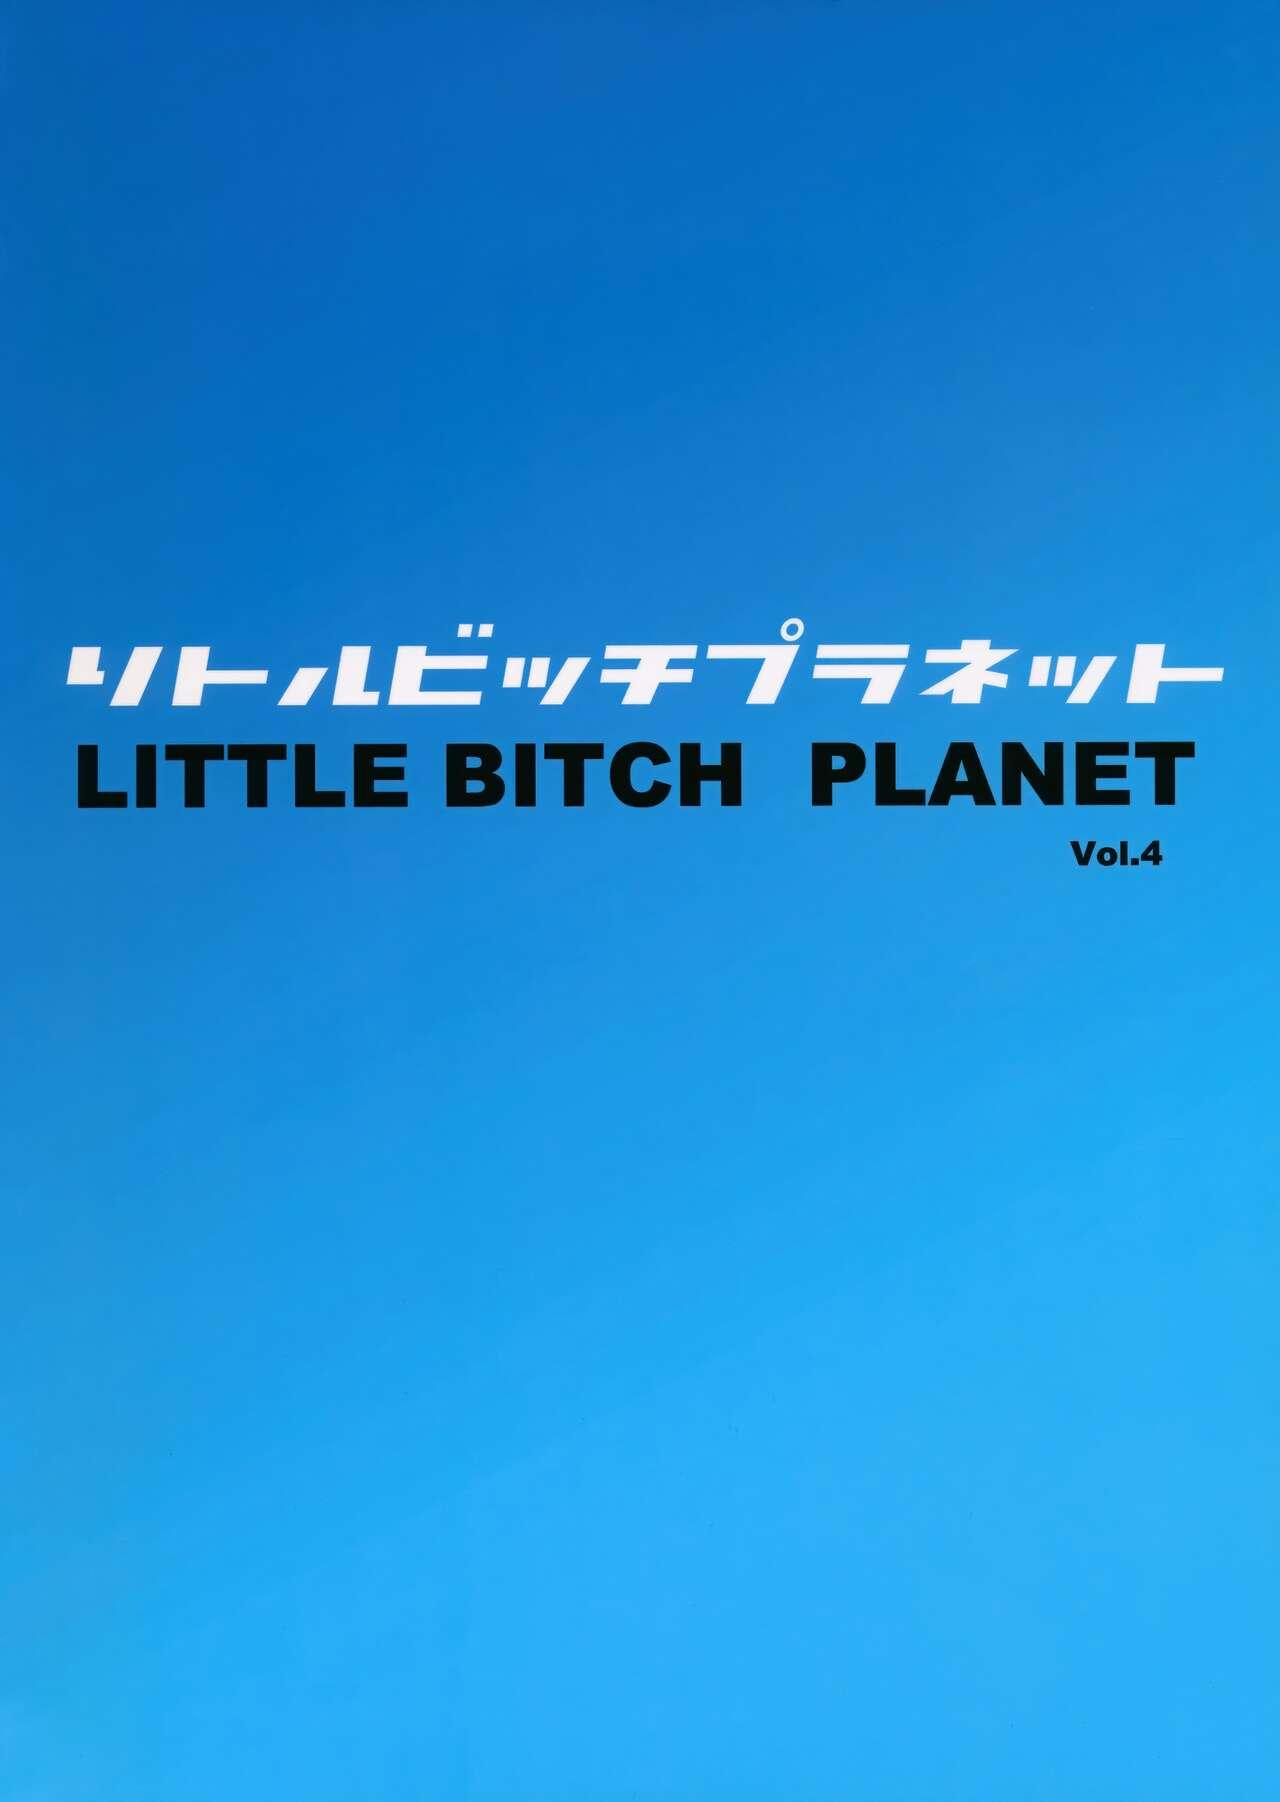 LittleBitchPlanet Vol. 4 27